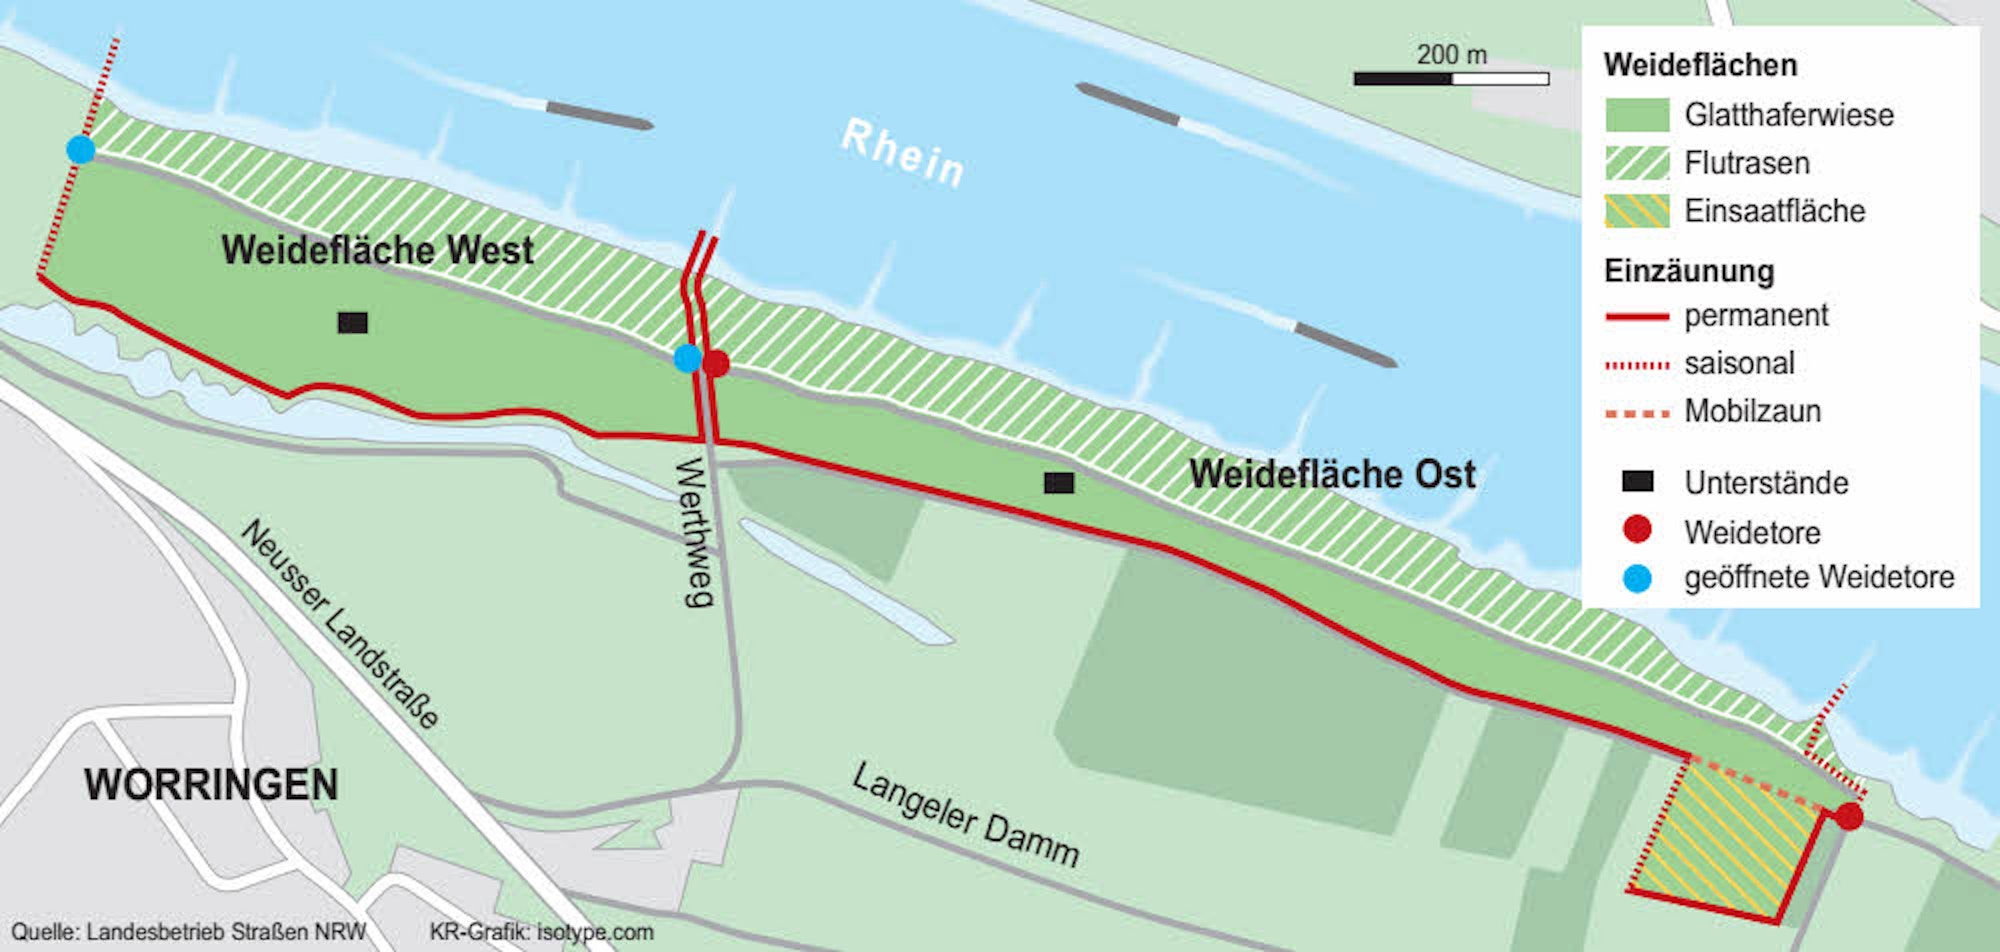 Vorbehaltlich der Zustimmung der Bezirksregierung könnte ein Kompromiss so aussehen, dass die linke Weidefläche frei und zugänglich bleibt, die Gatter offenstehen, so dass man vom Werthweg nach links abbiegen kann. Auch der Zugang zum Rhein bleibt frei.